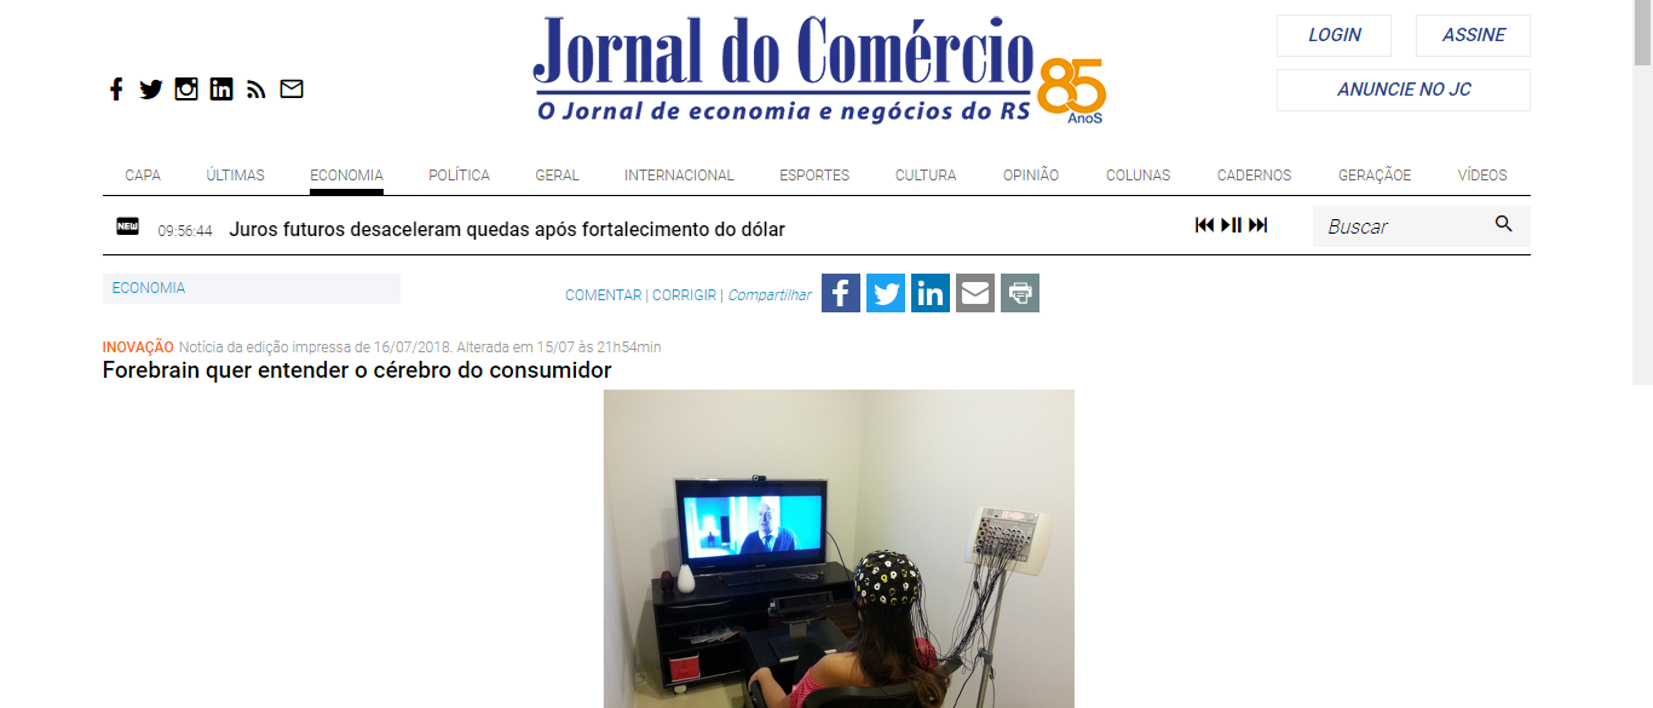 clipping_jornal_do_comercio